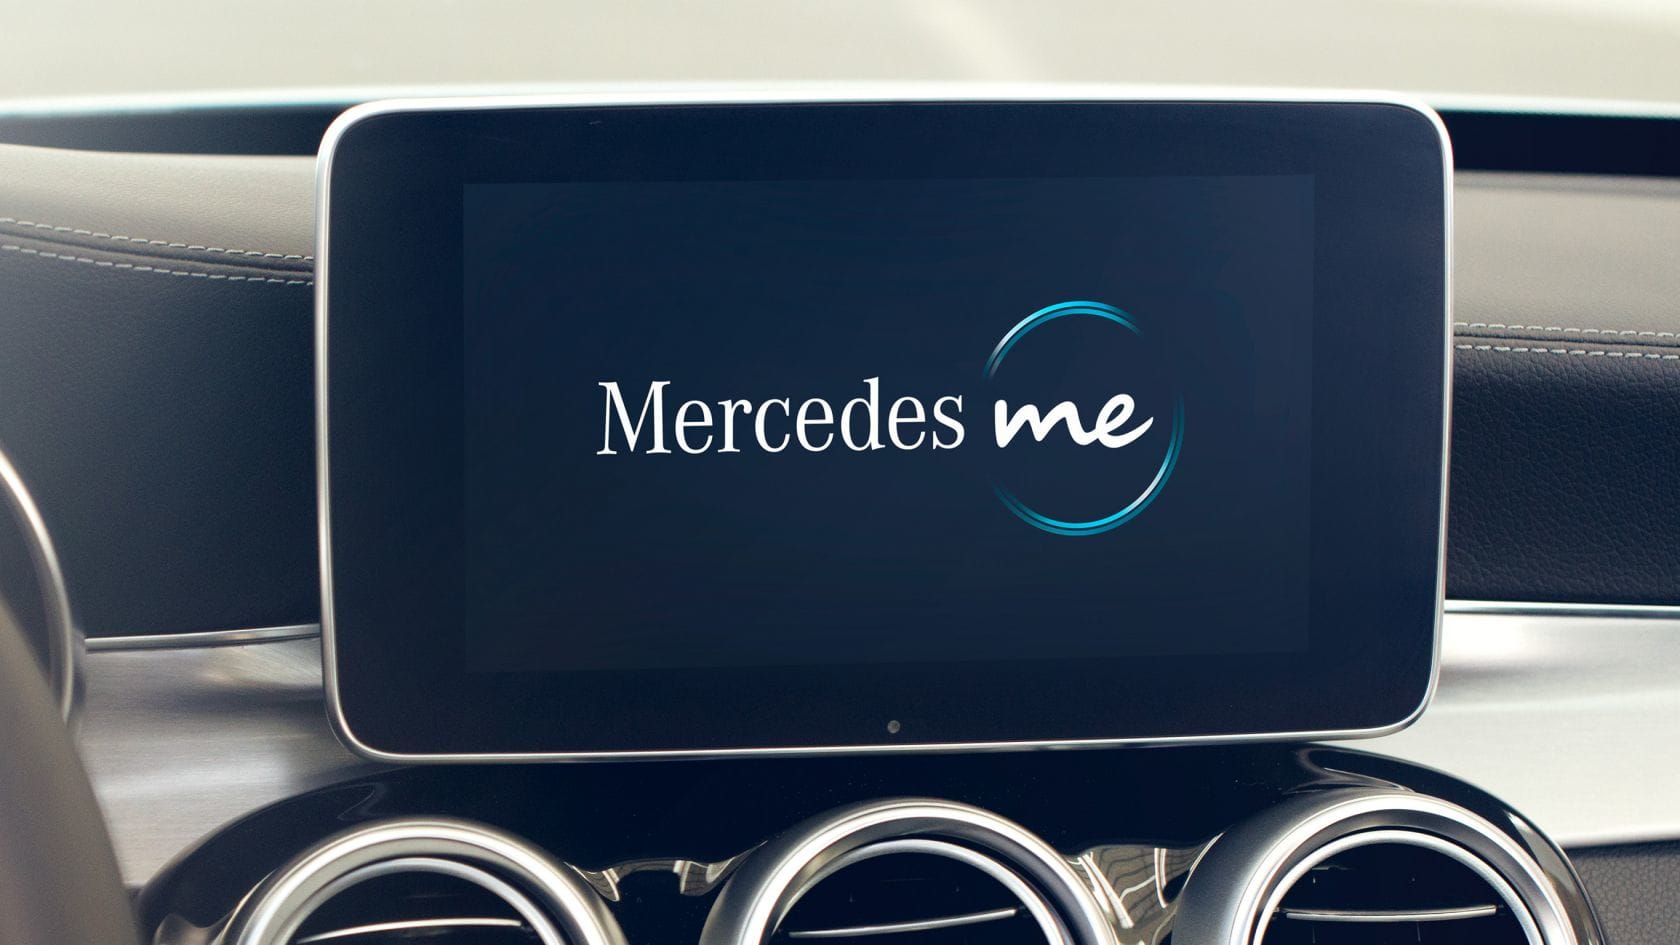 Une faille de sécurité présente dans l’application de Mercedes afficherait les données d’autres utilisateurs